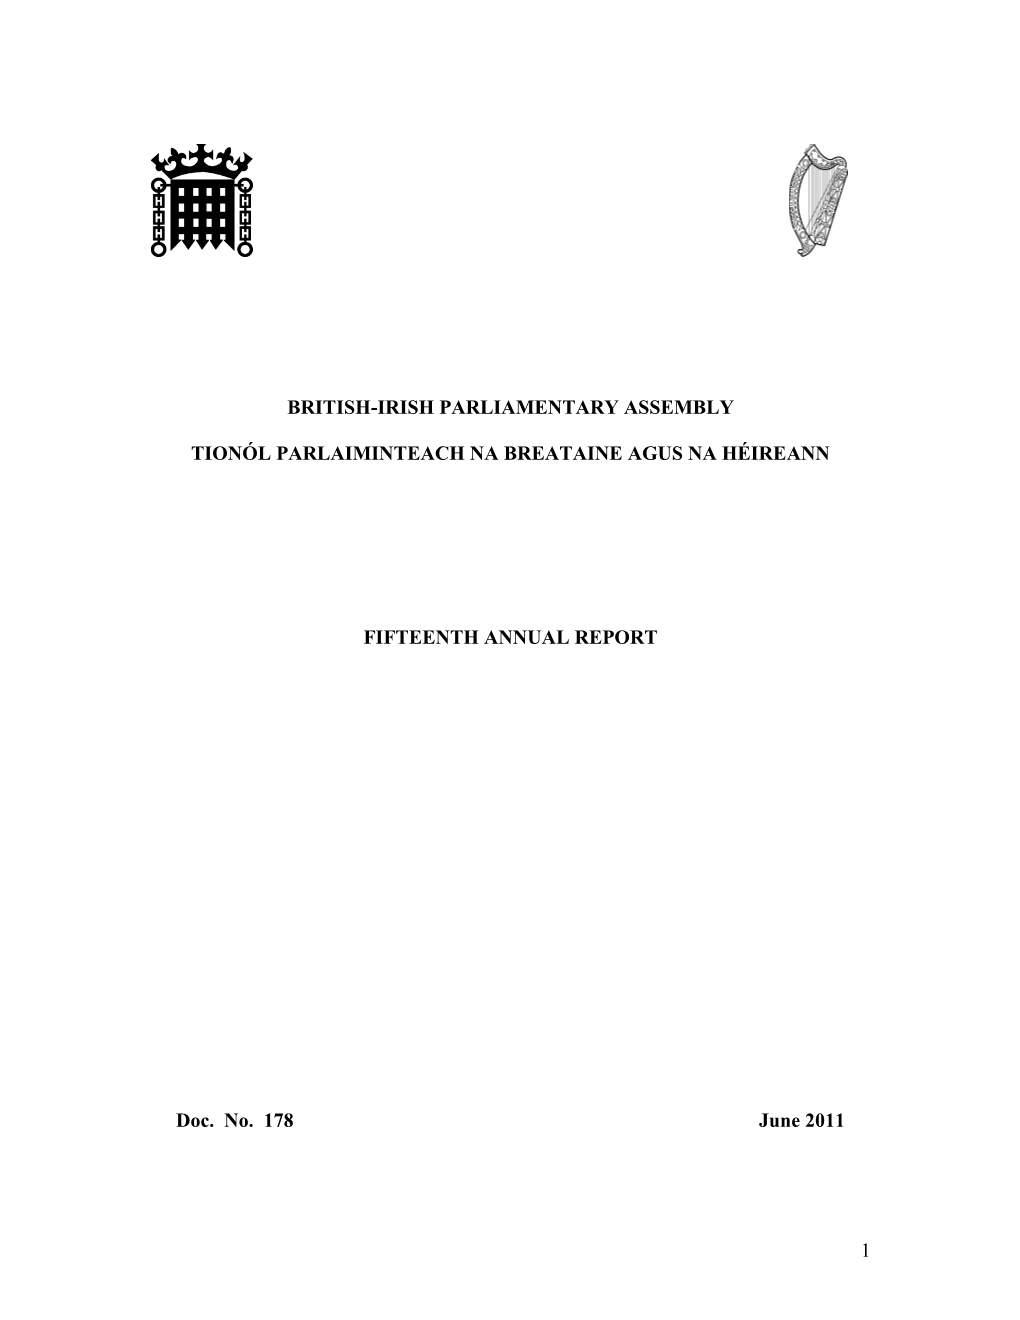 15Th Annual Report, 2010-2011